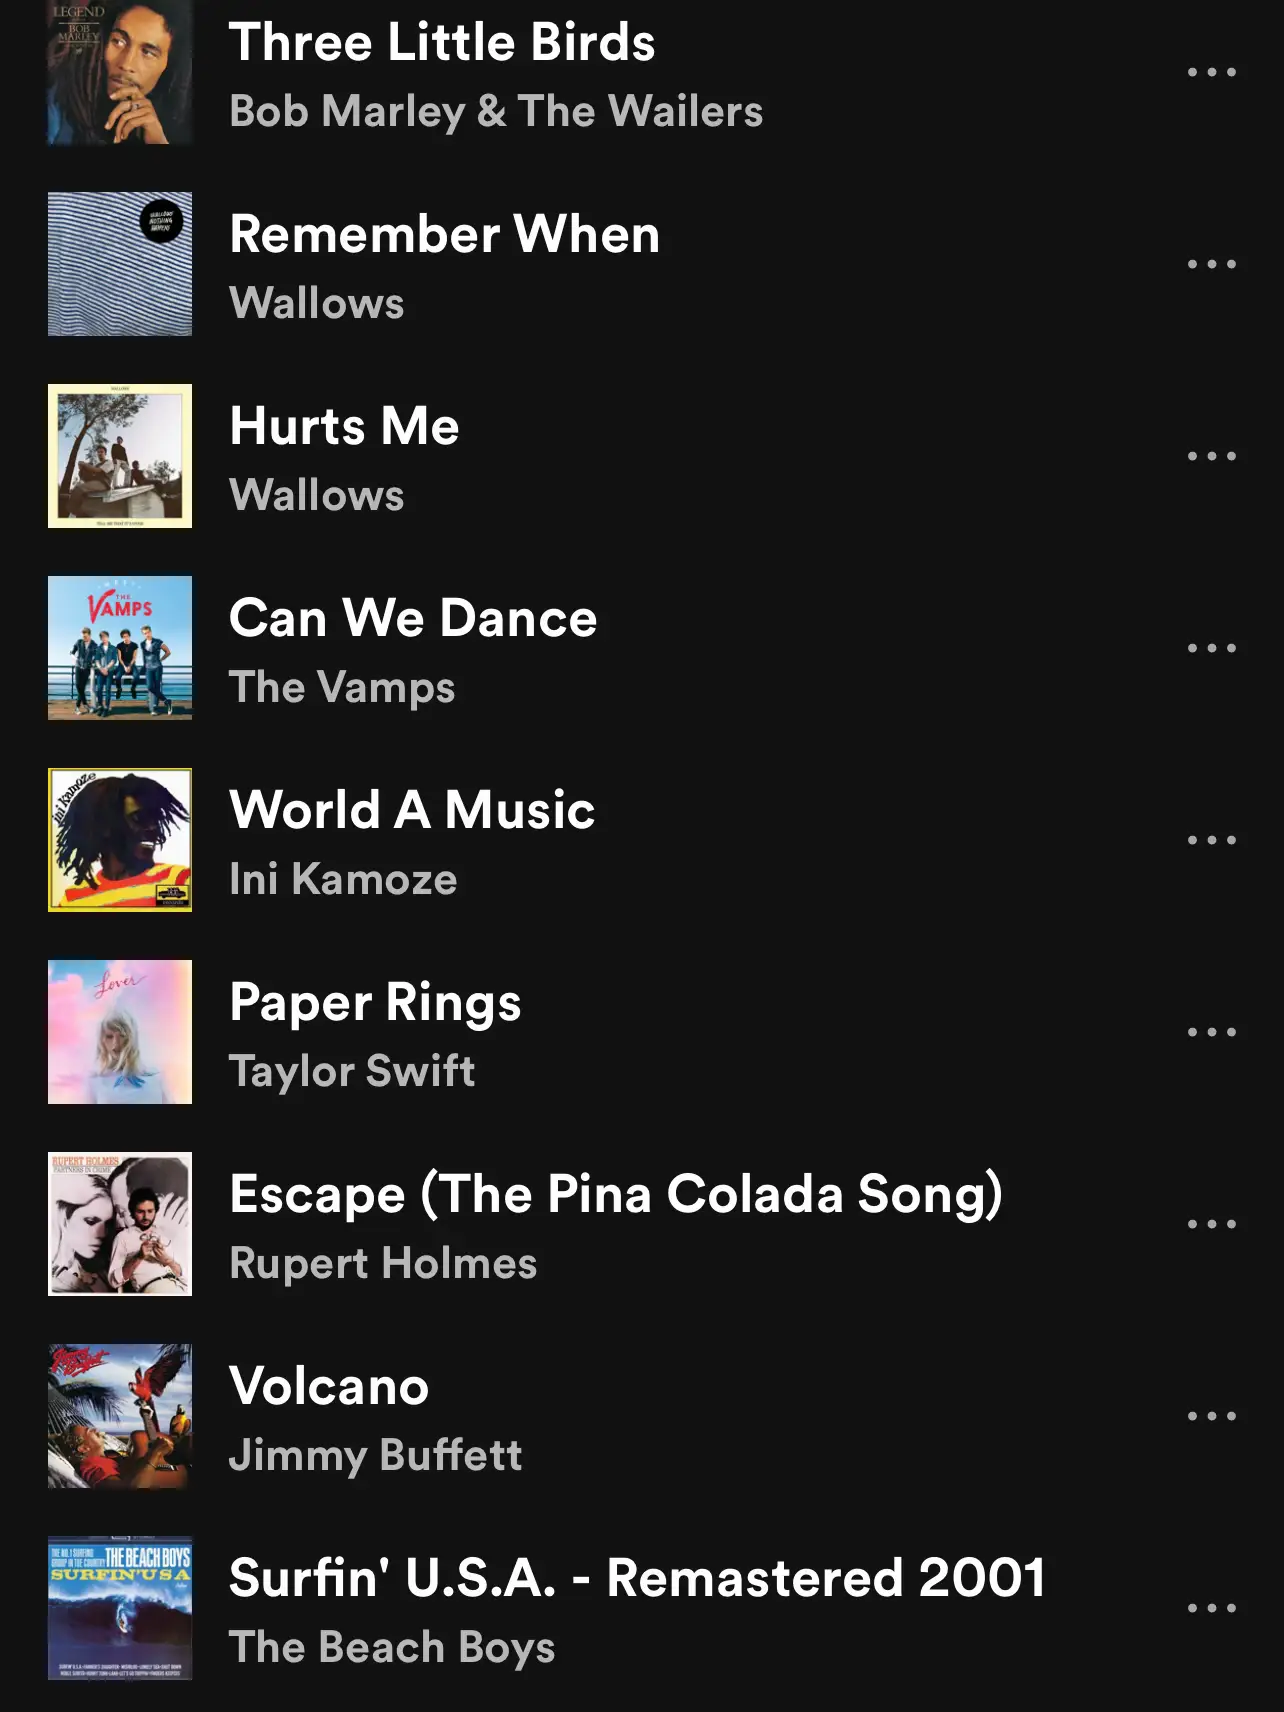  A list of music